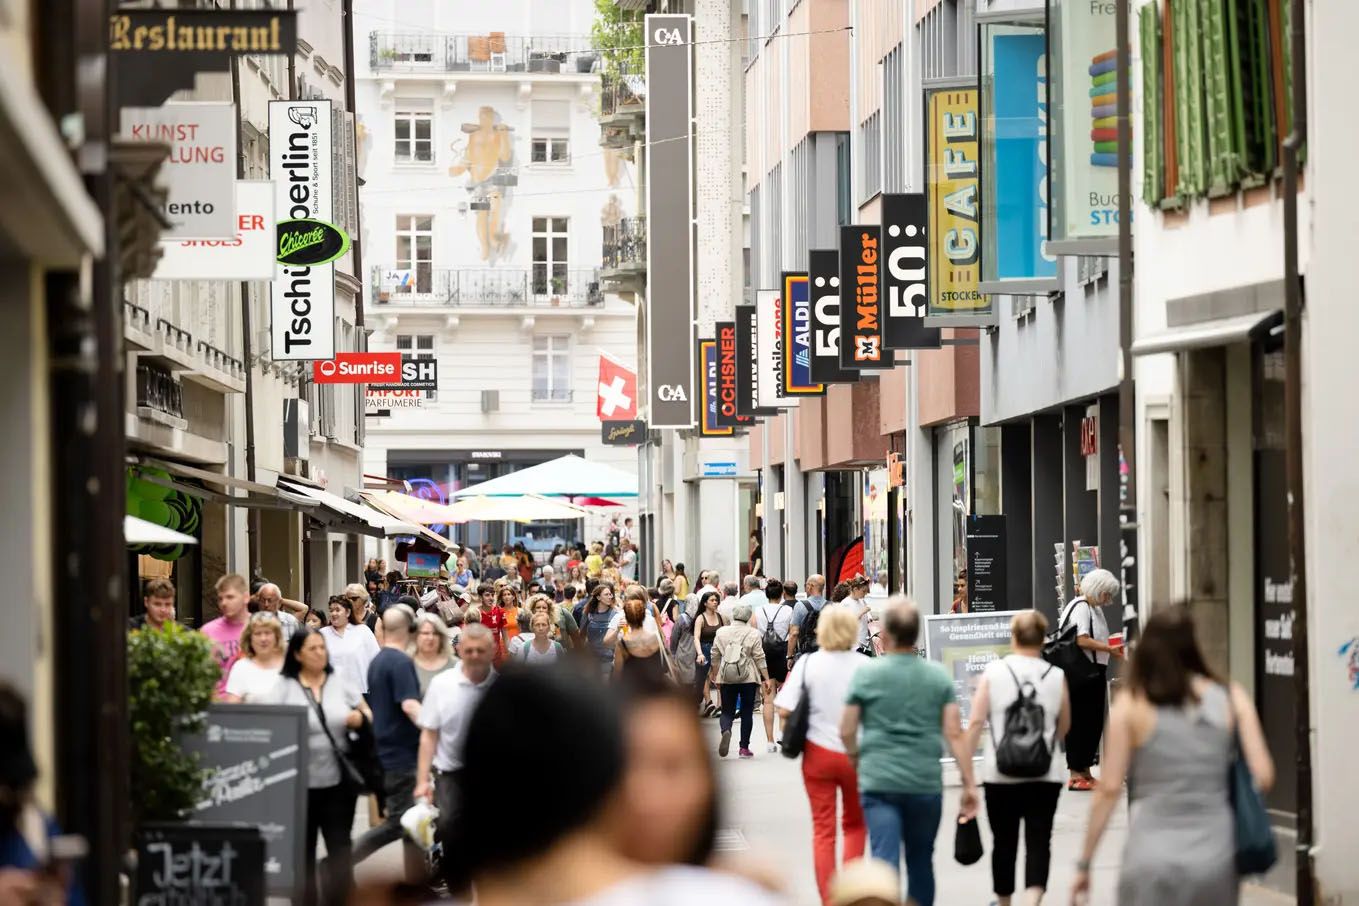 In welchen Städten die Läden bald sonntags geöffnet sein könnten – und welche kein Interesse an der Reform haben